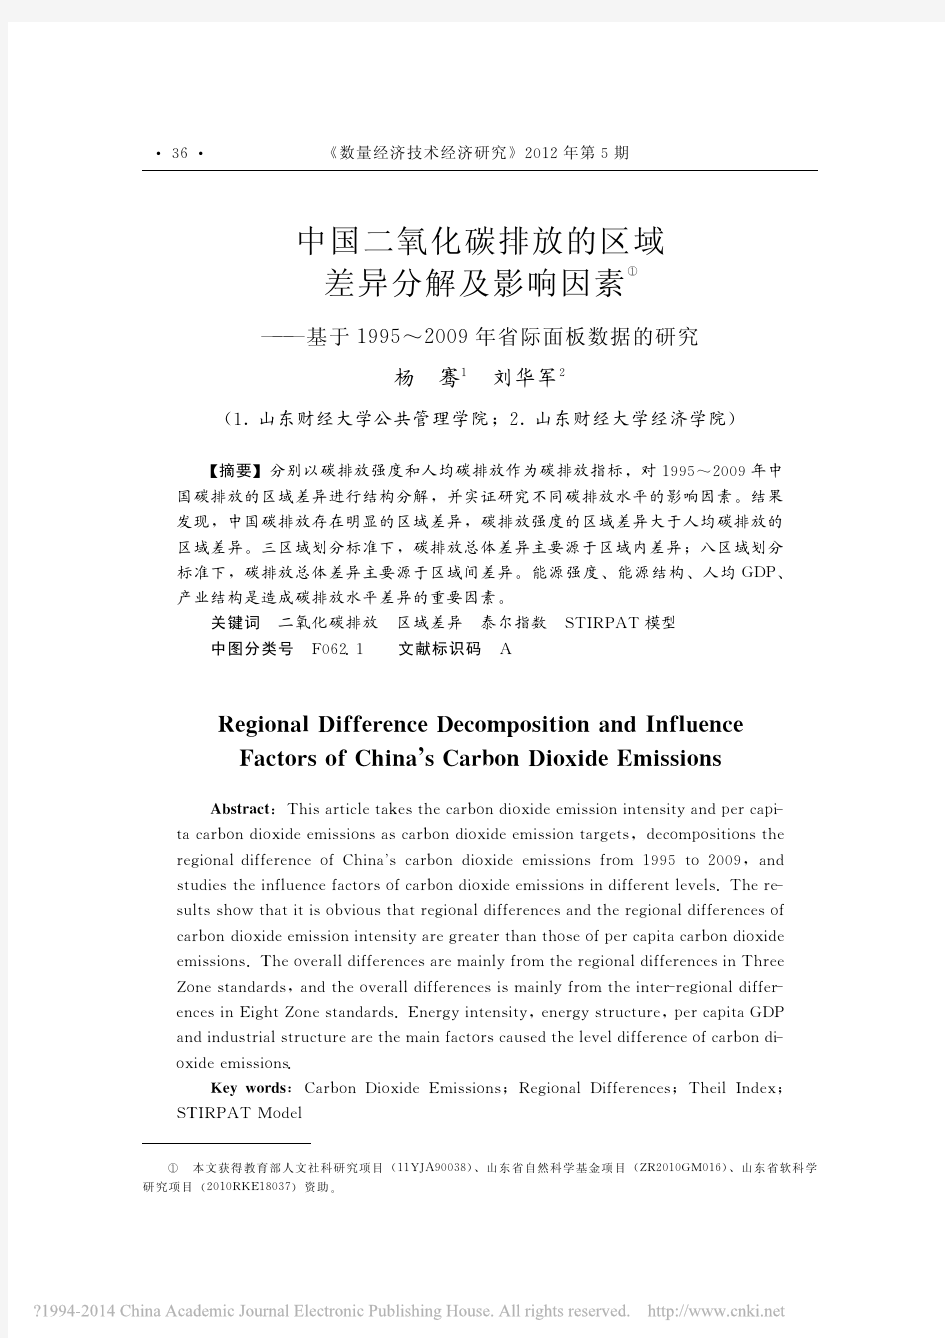 中国二氧化碳排放的区域差异分解及_省略_5_2009年省际面板数据的研究_杨骞